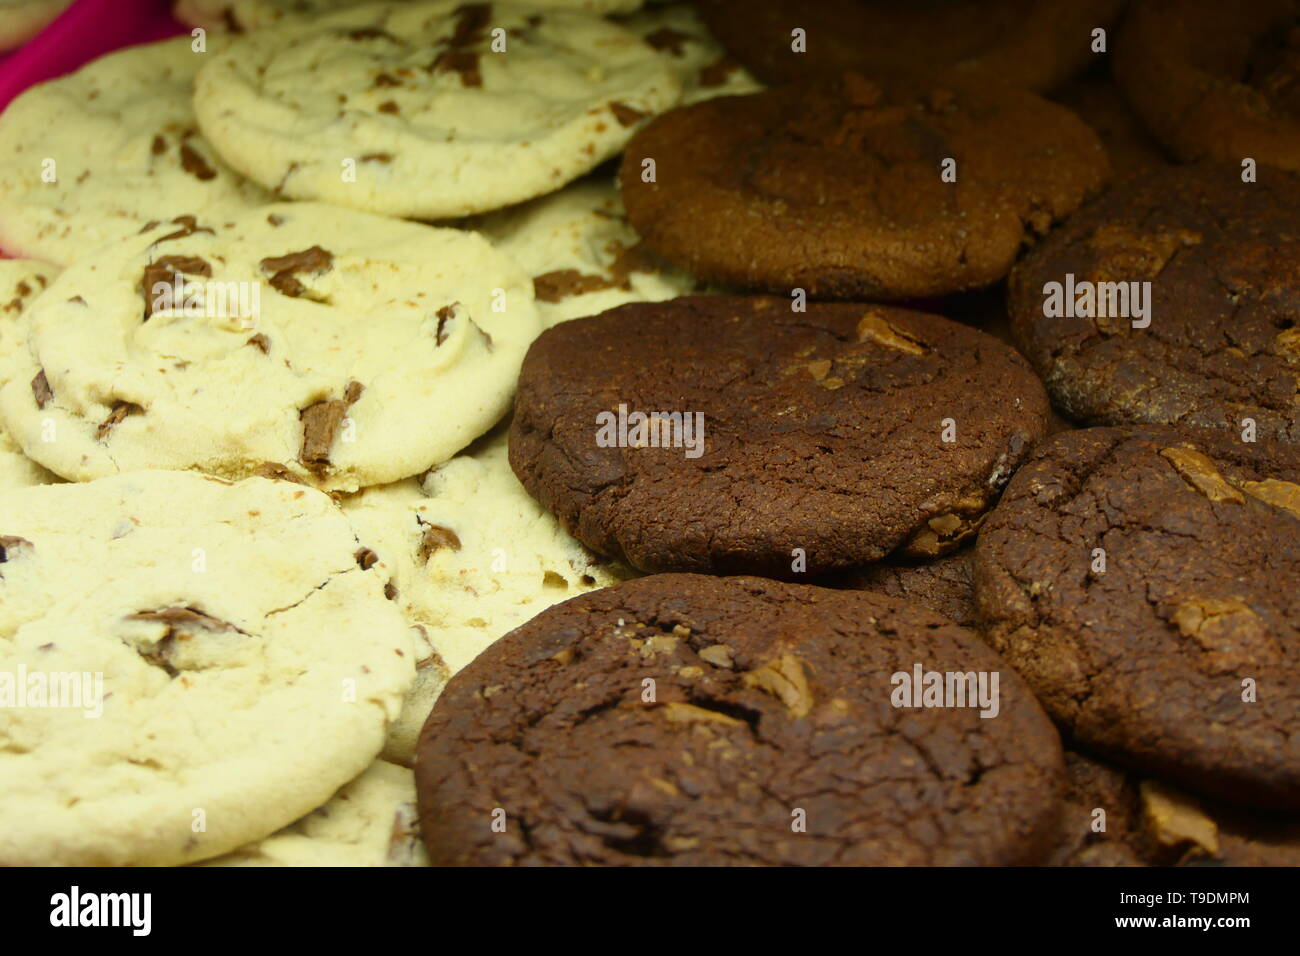 Marrone e bianco choco cookies, delizioso cioccolato biscotti della pasticceria, servita su una piastra Foto Stock